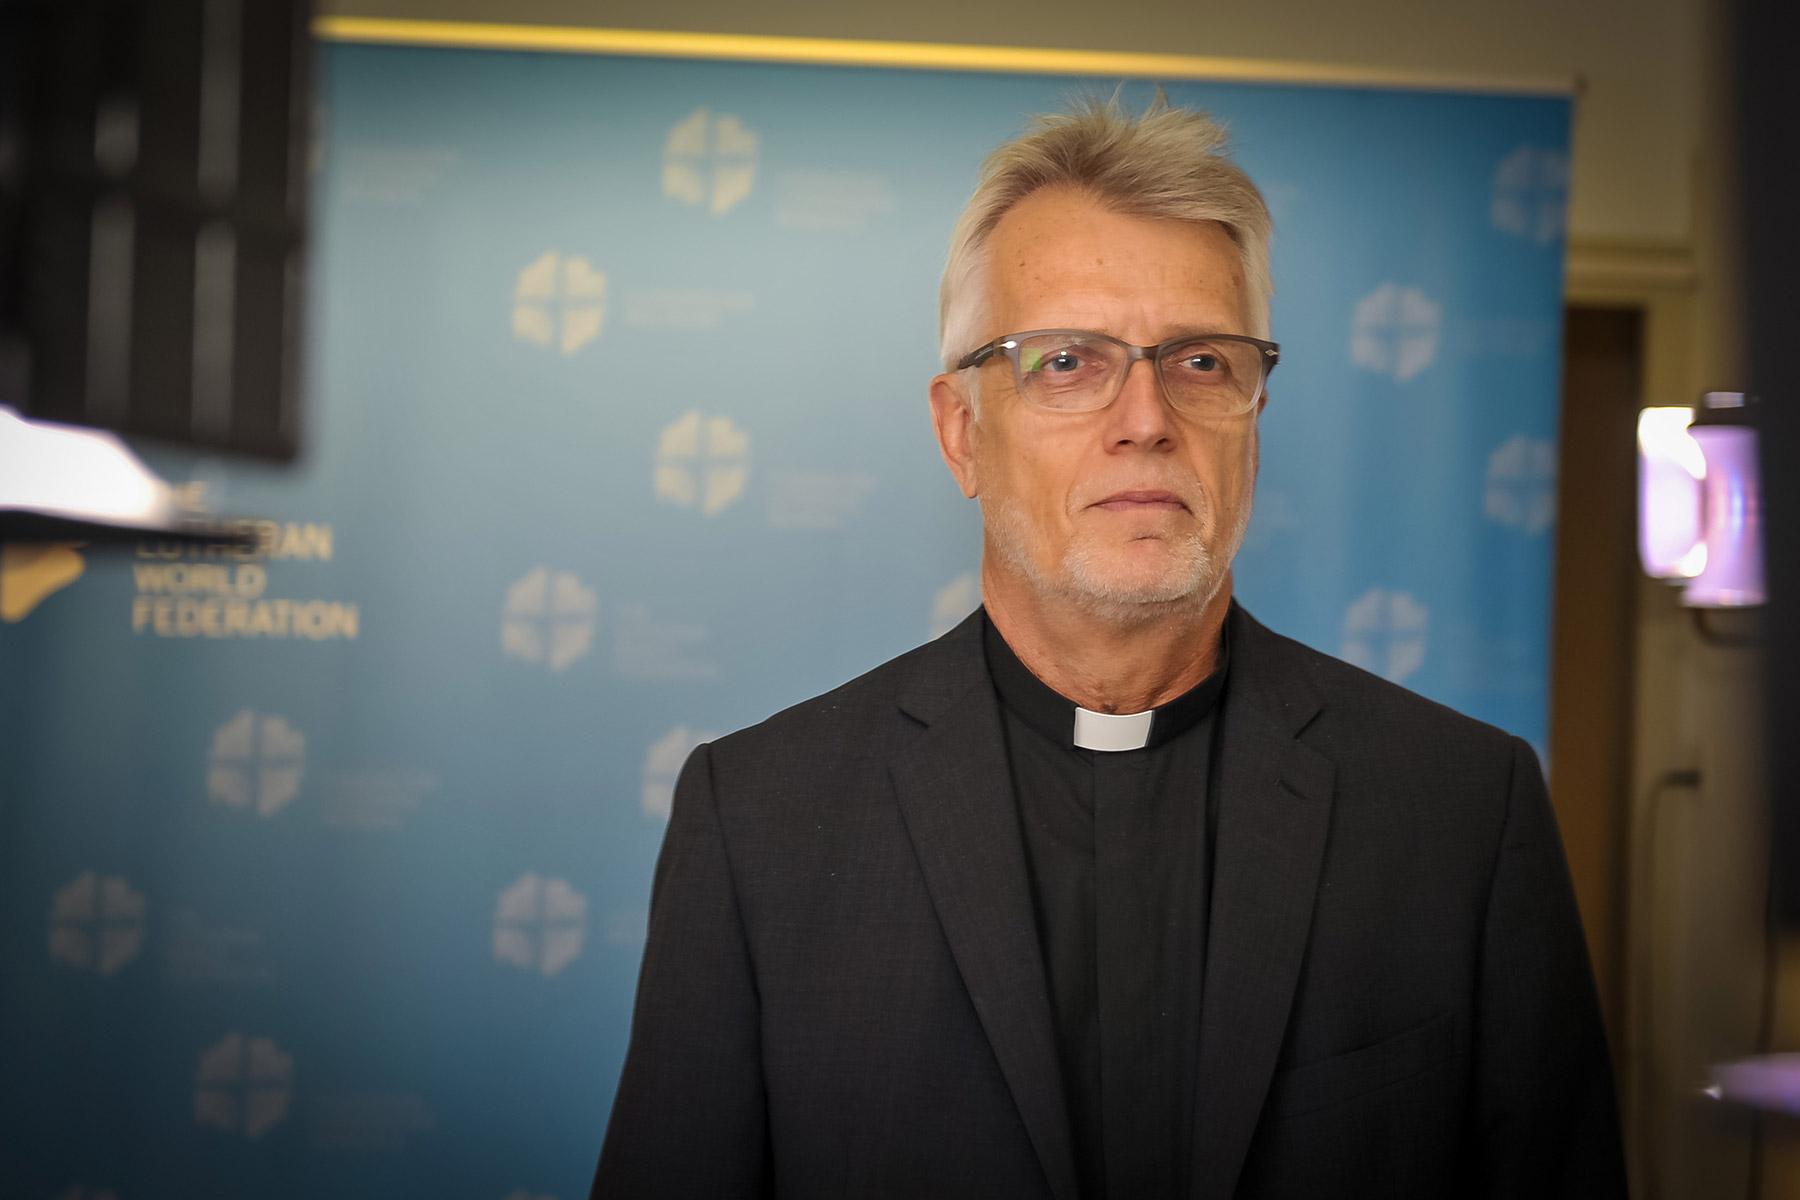 LWB-Generalsekretär Martin Junge sprach per Videoschalte zur "Faith for Nature"-Konferenz, die in Island stattfindet. Foto: LWB/S. Gallay